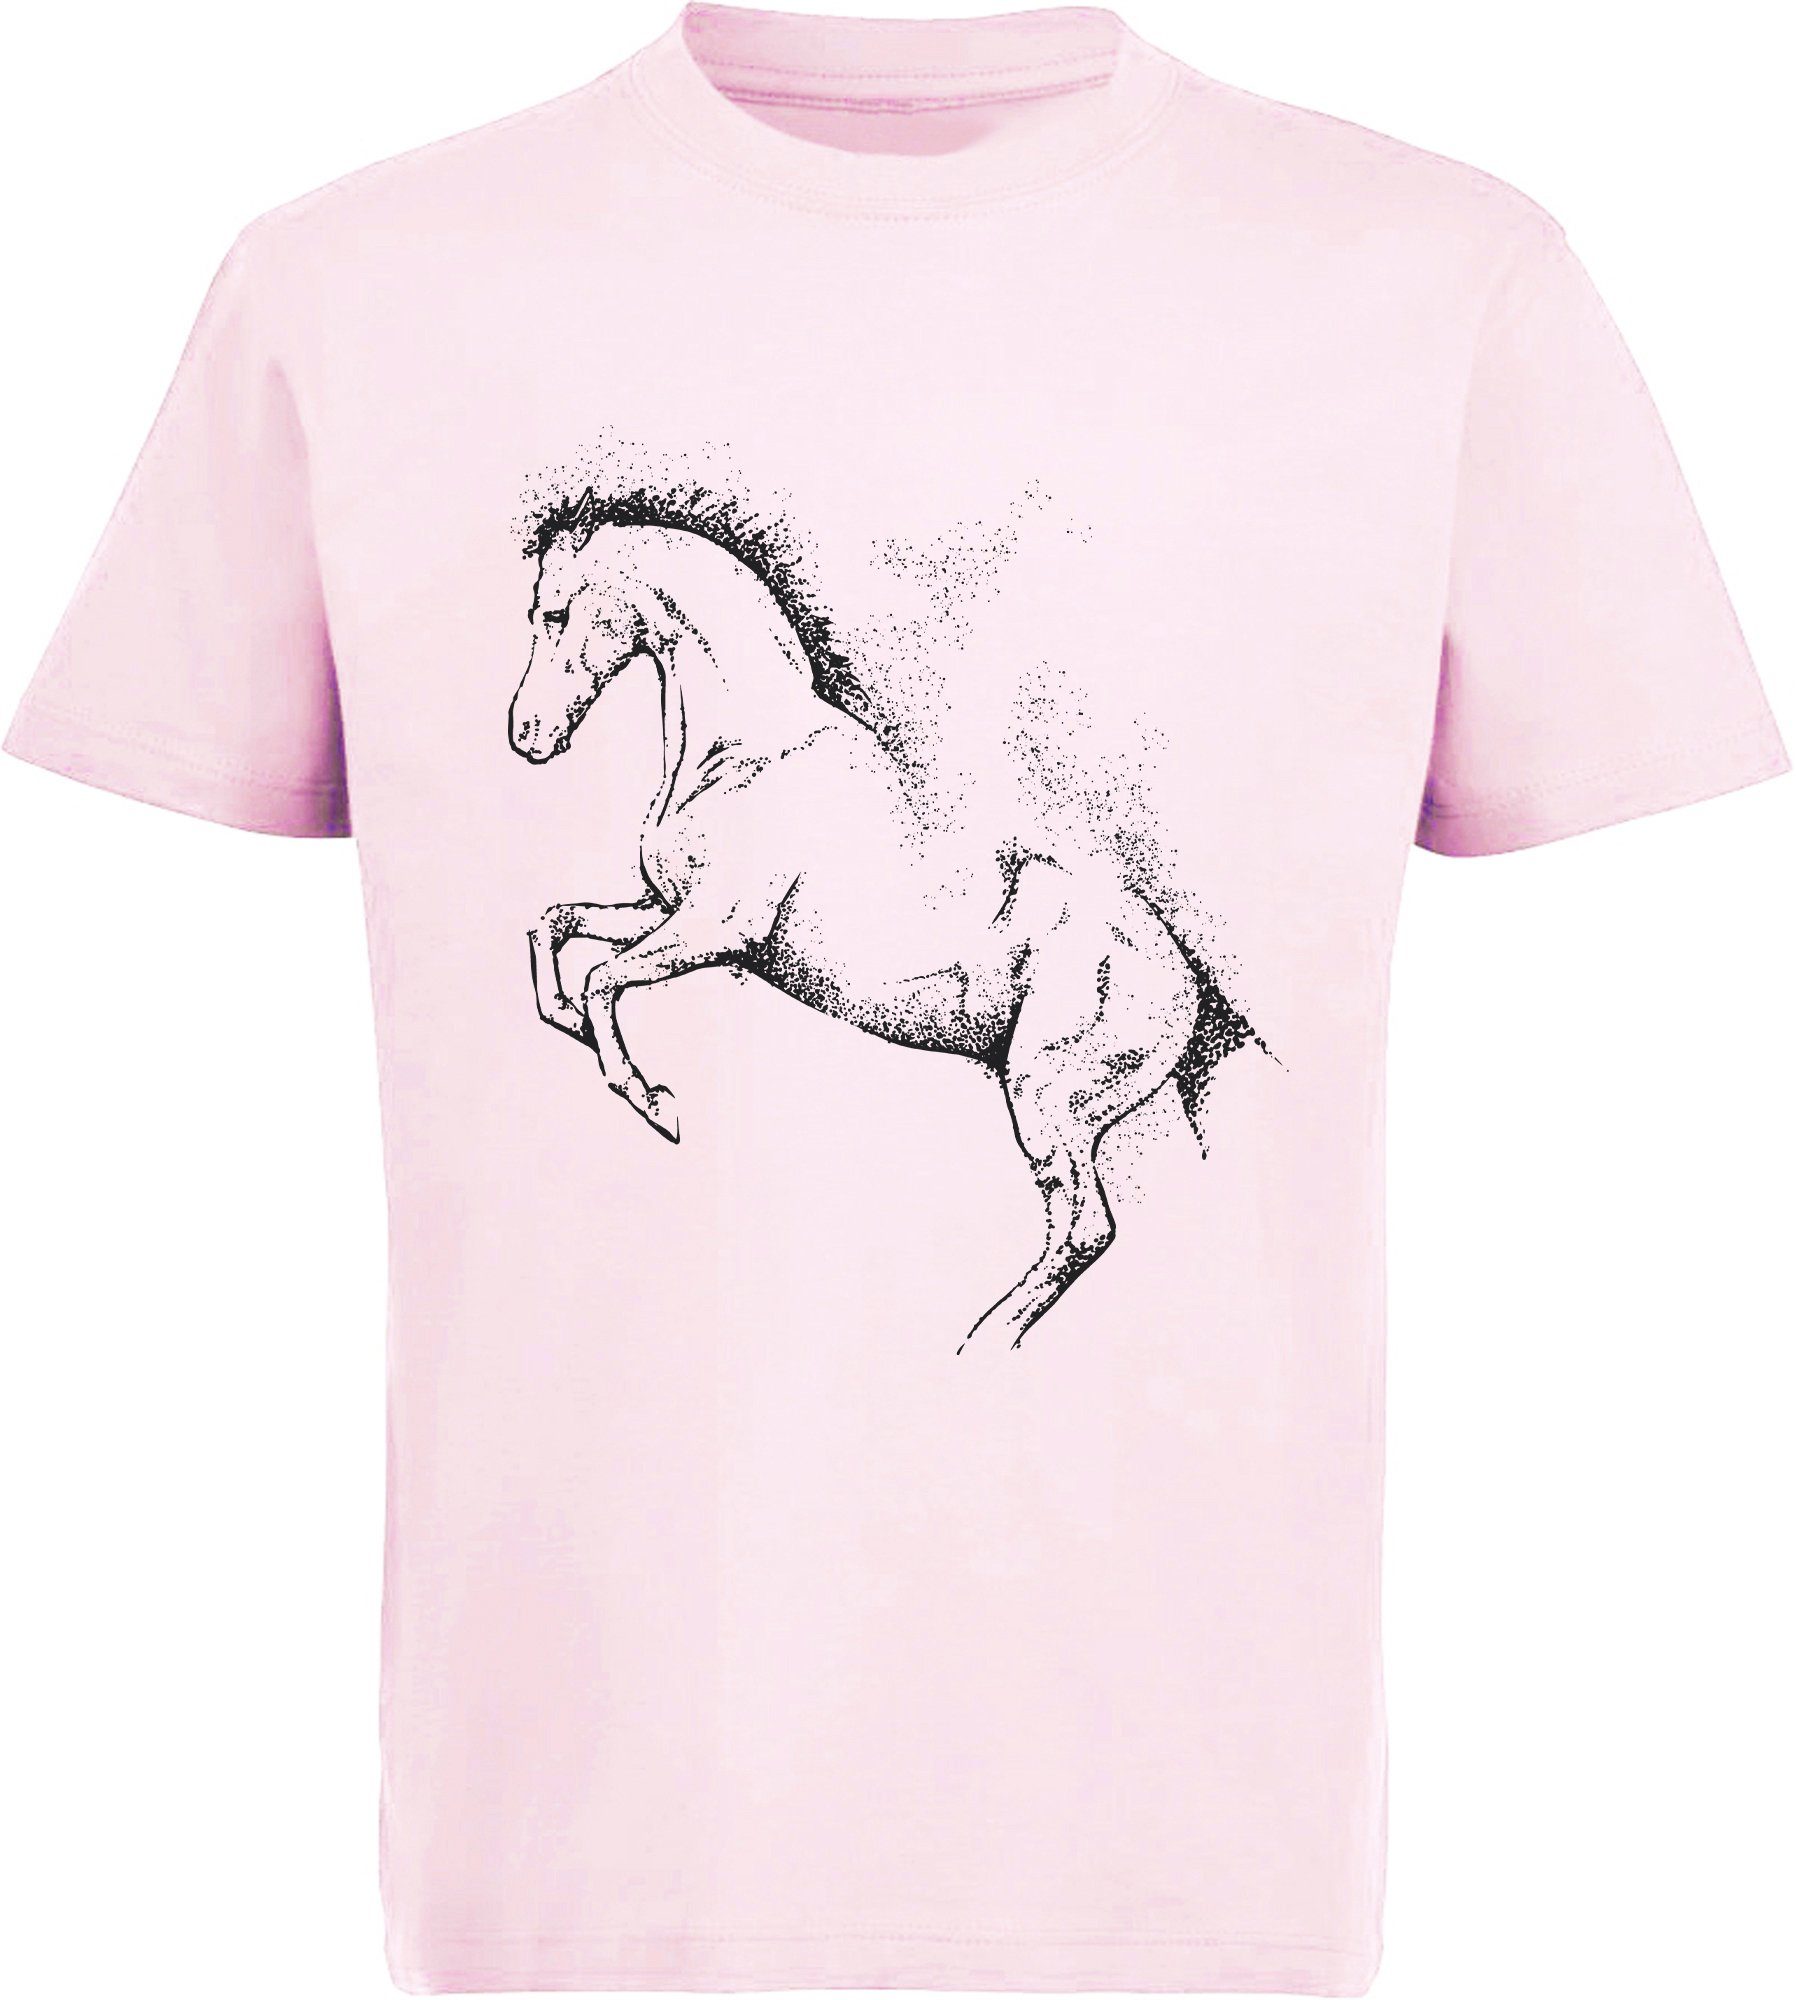 Print-Shirt - rosa Baumwollshirt Pferde mit Aufdruck, T-Shirt Silhouette Gepunktete Kinder bedrucktes i196 MyDesign24 Mädchen